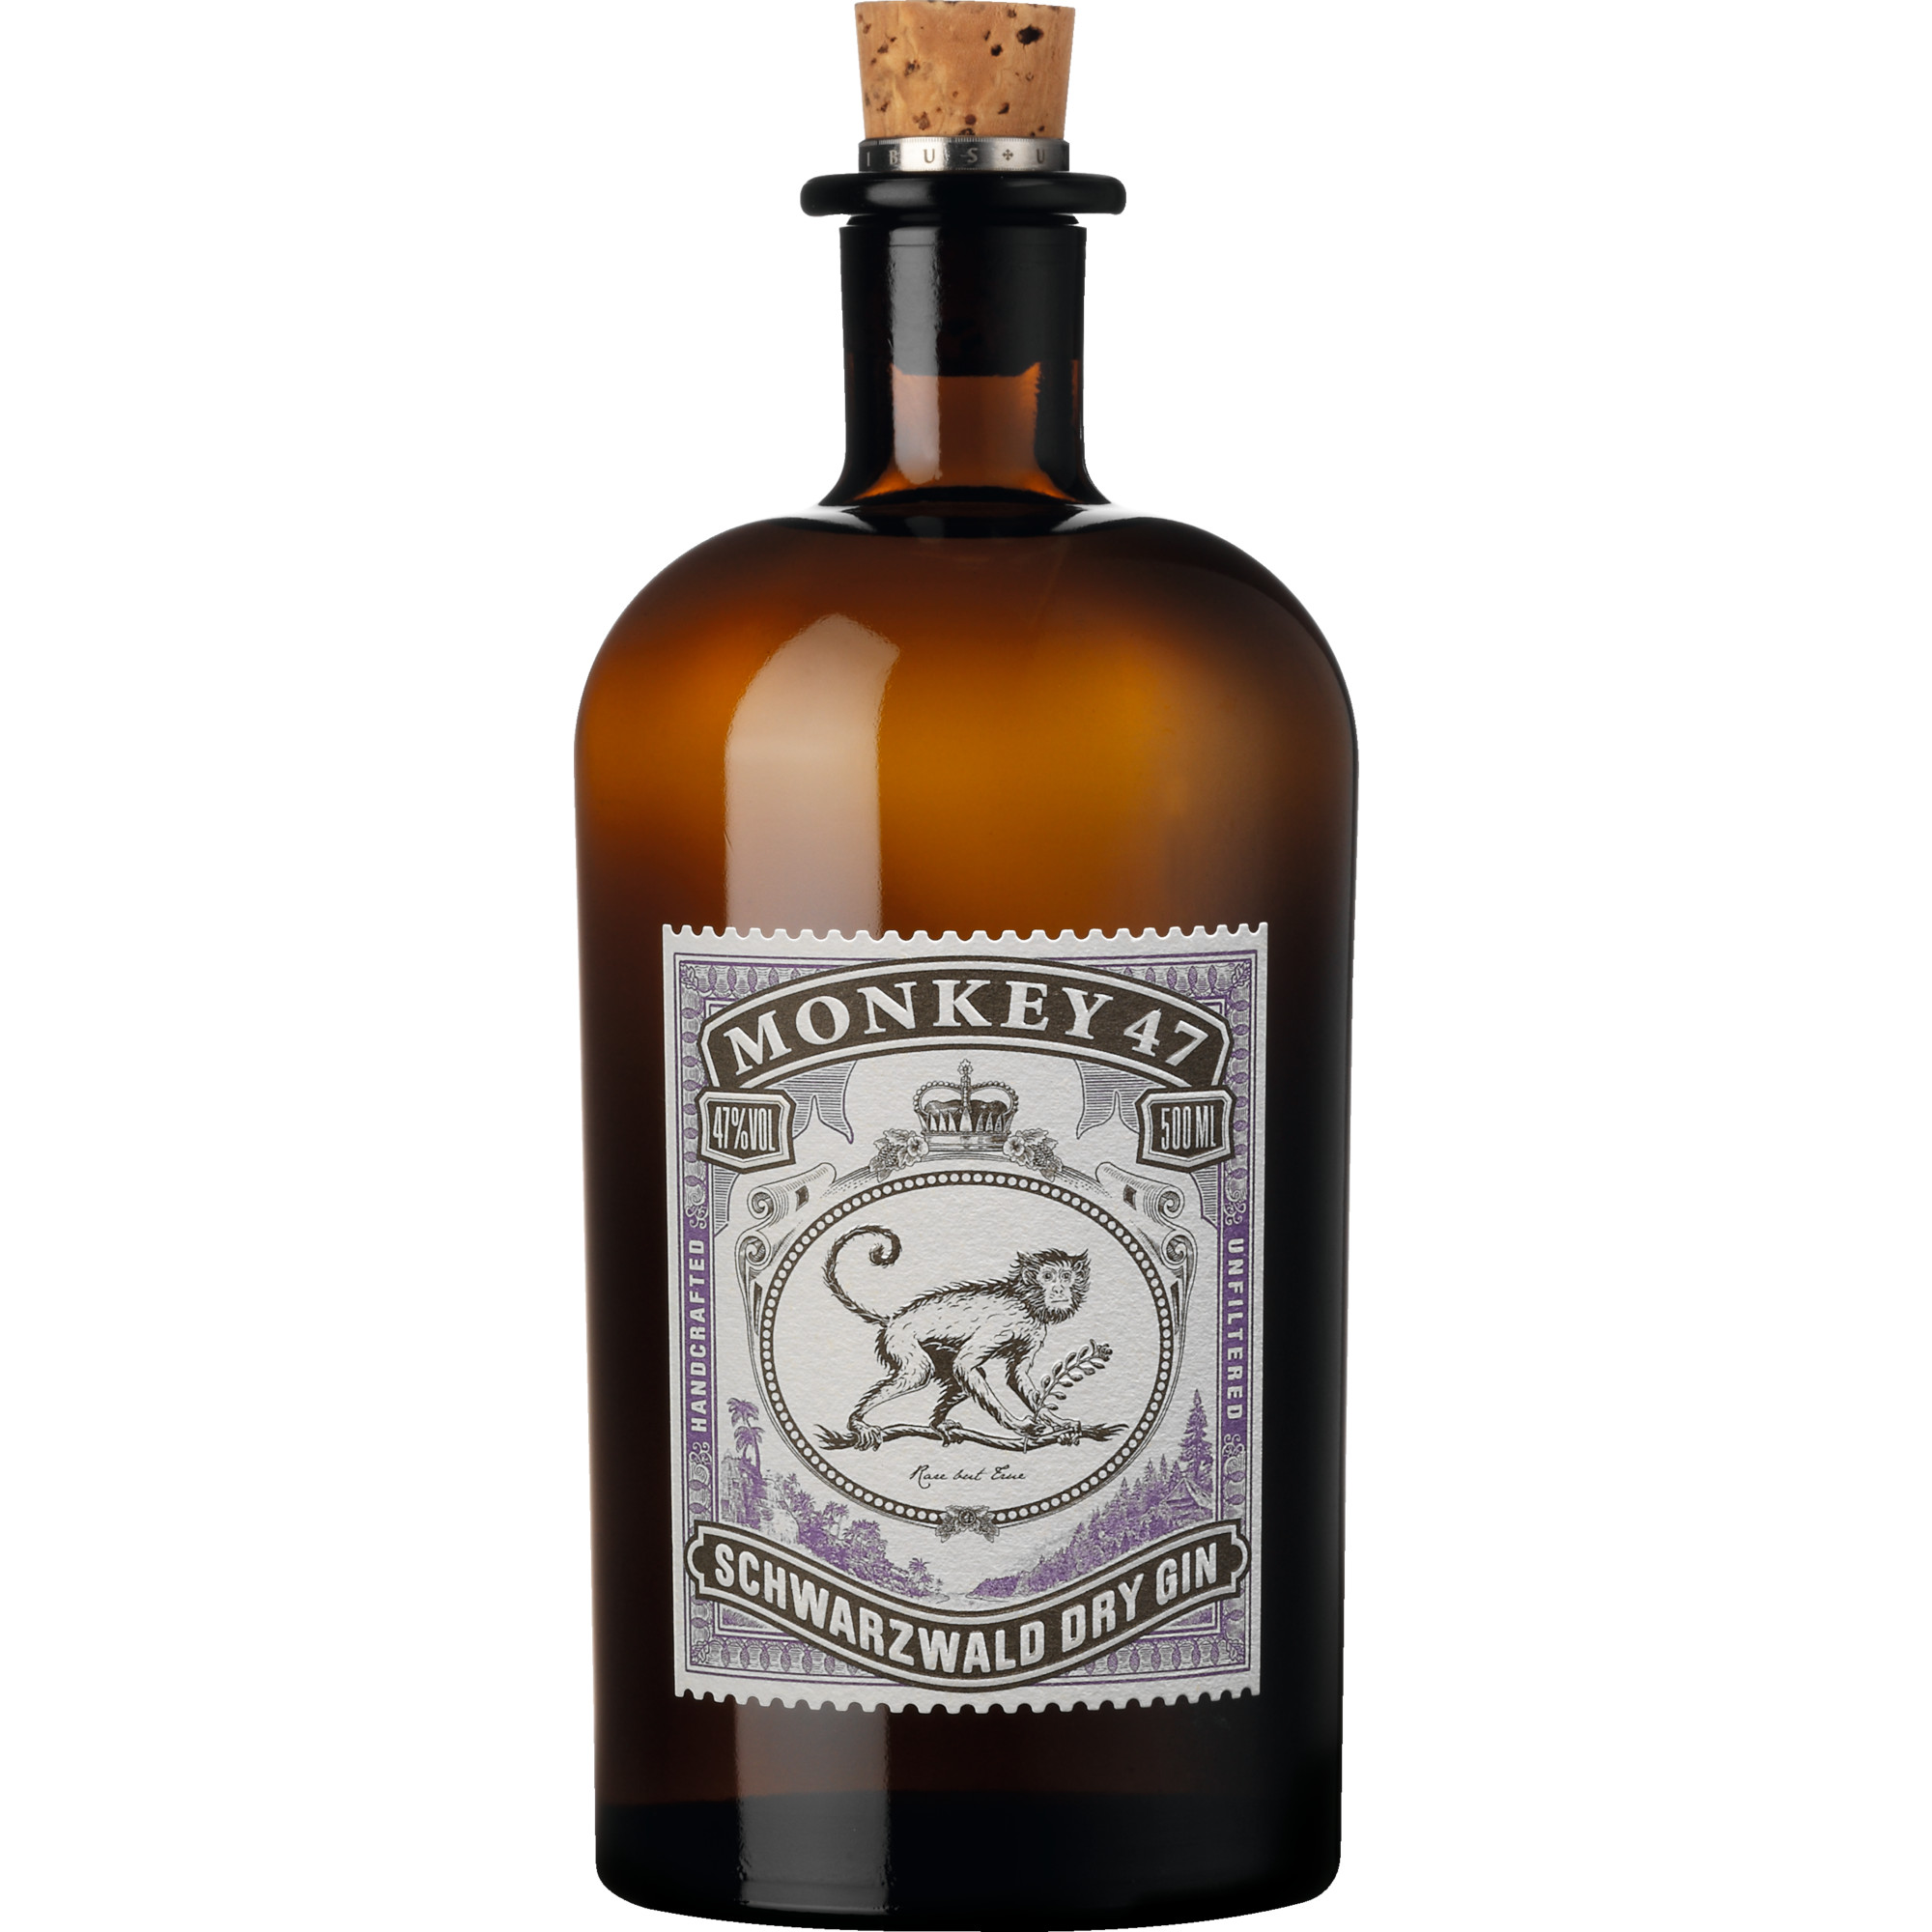 Monkey 47 Schwarzwald Dry Gin, 0,5 L, 47% Vol., Spirituosen  Spirituosen Hawesko